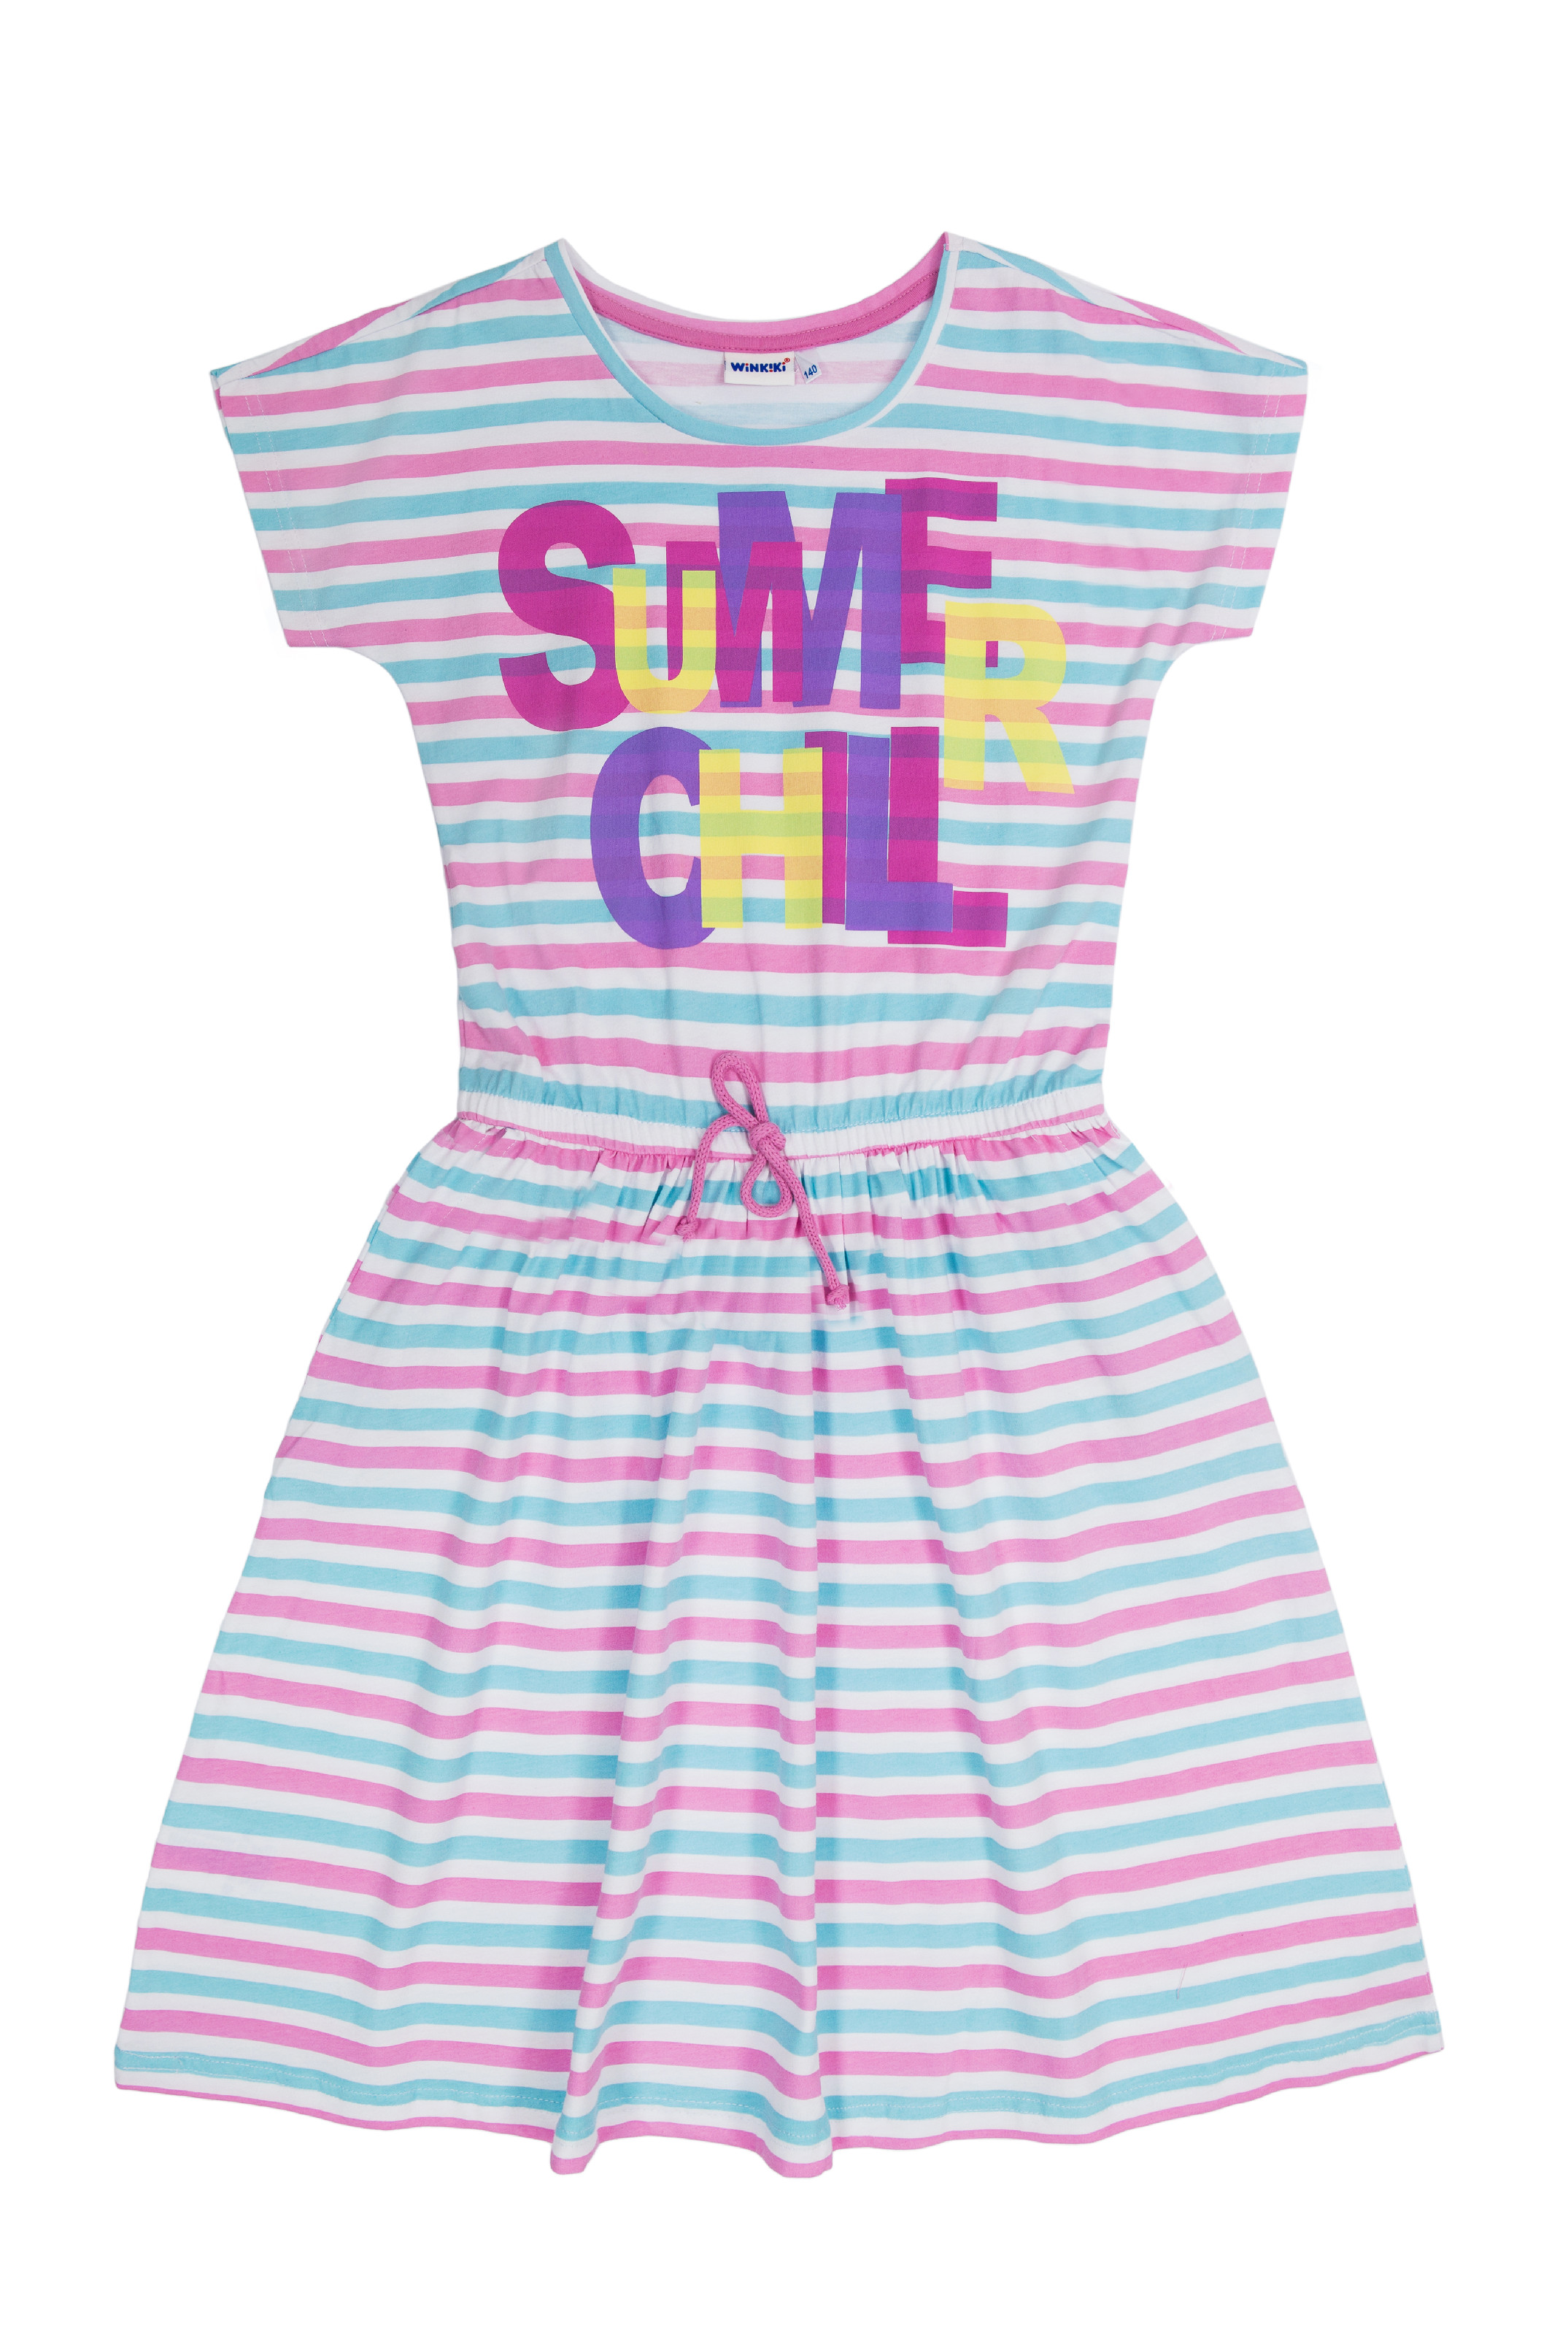 Dívčí šaty - WINKIKI WTG 01802, růžová / proužek Barva: Růžová, Velikost: 146